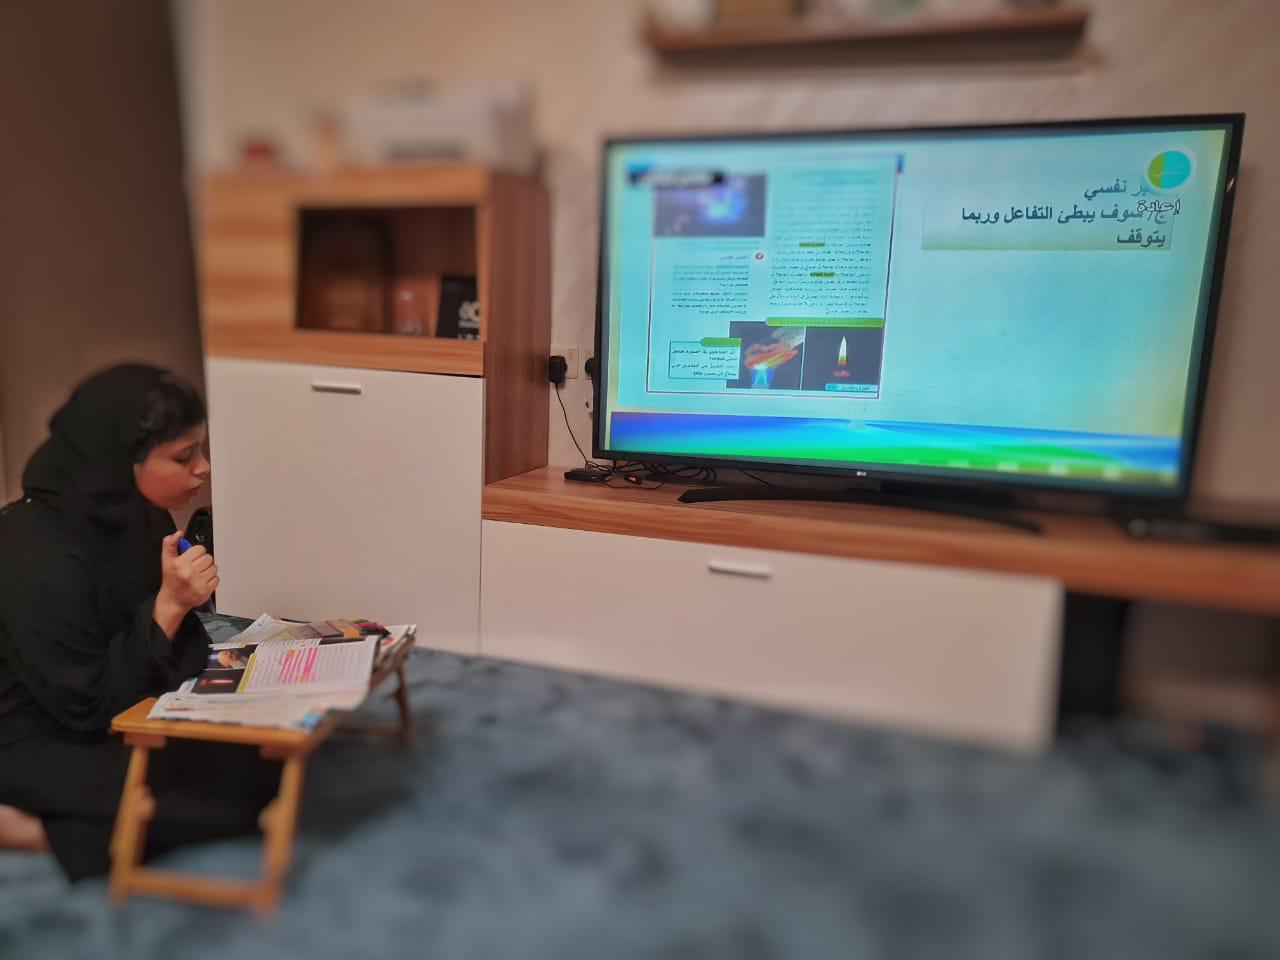 طالبات تعليم مكة يسجلن تجاربهن مع التعليم عن بعد والمدرسة الافتراضية.